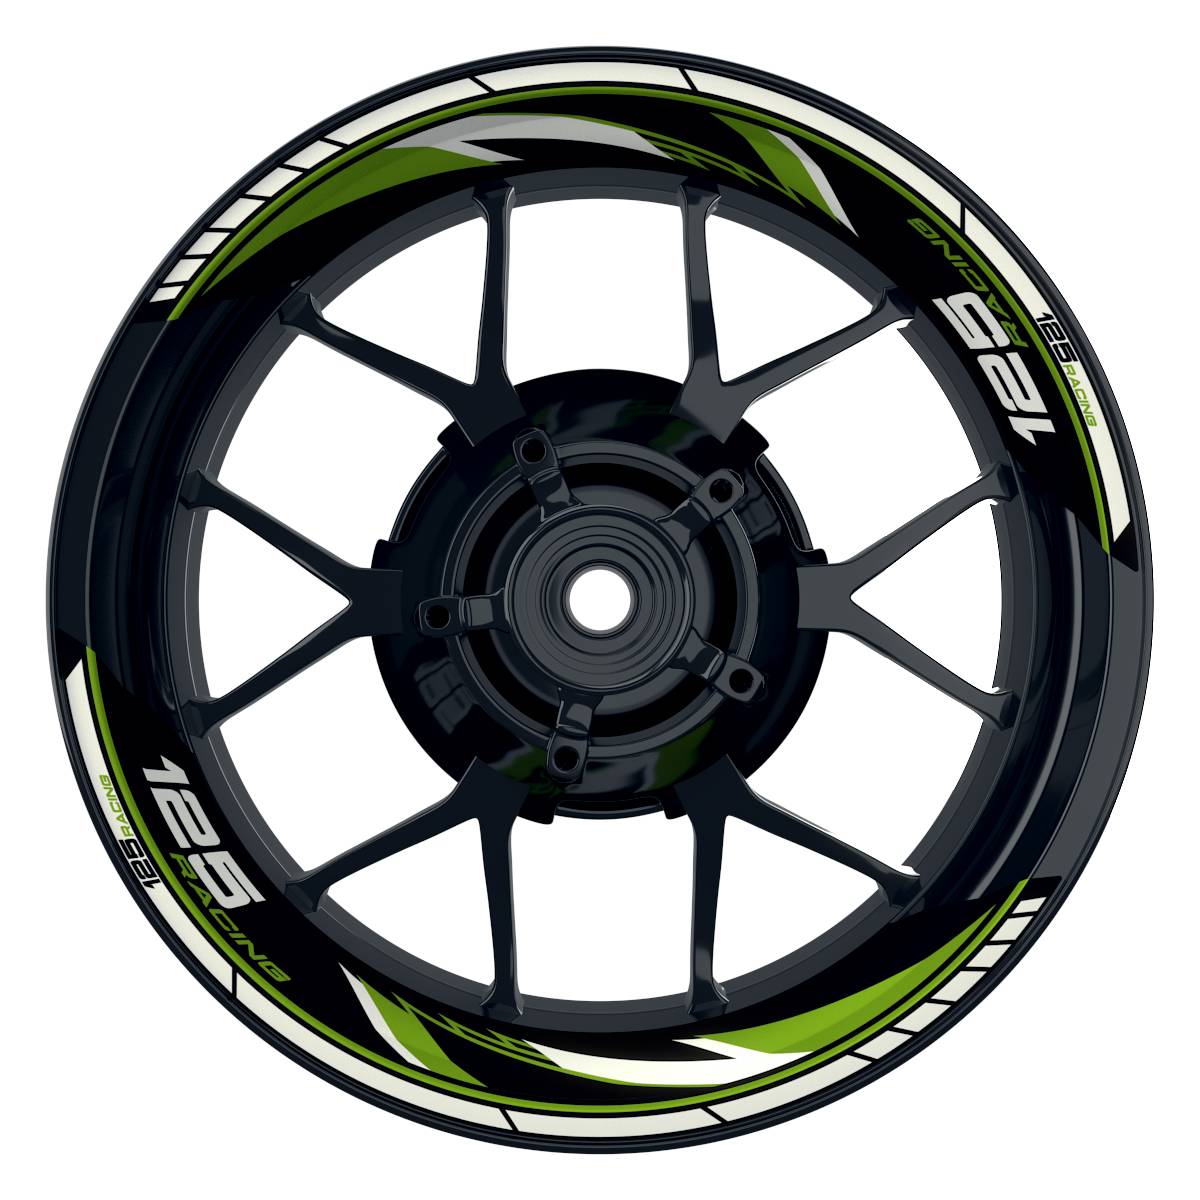 KTM Racing 125 Razor schwarz gruen Frontansicht